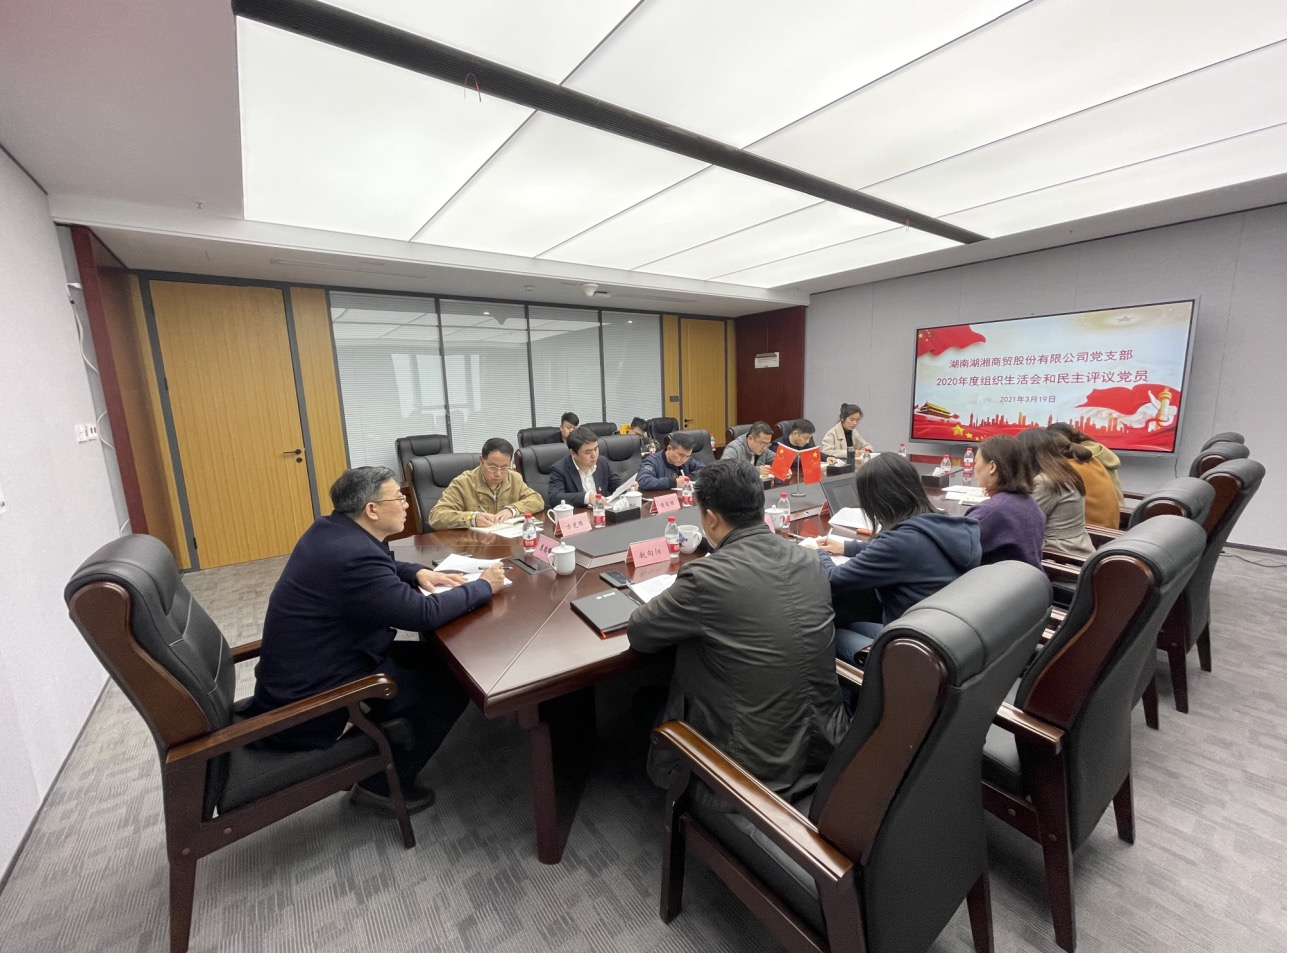 湖湘商貿公司黨支部召開 2020年度組織生活會和民主評議黨員會議